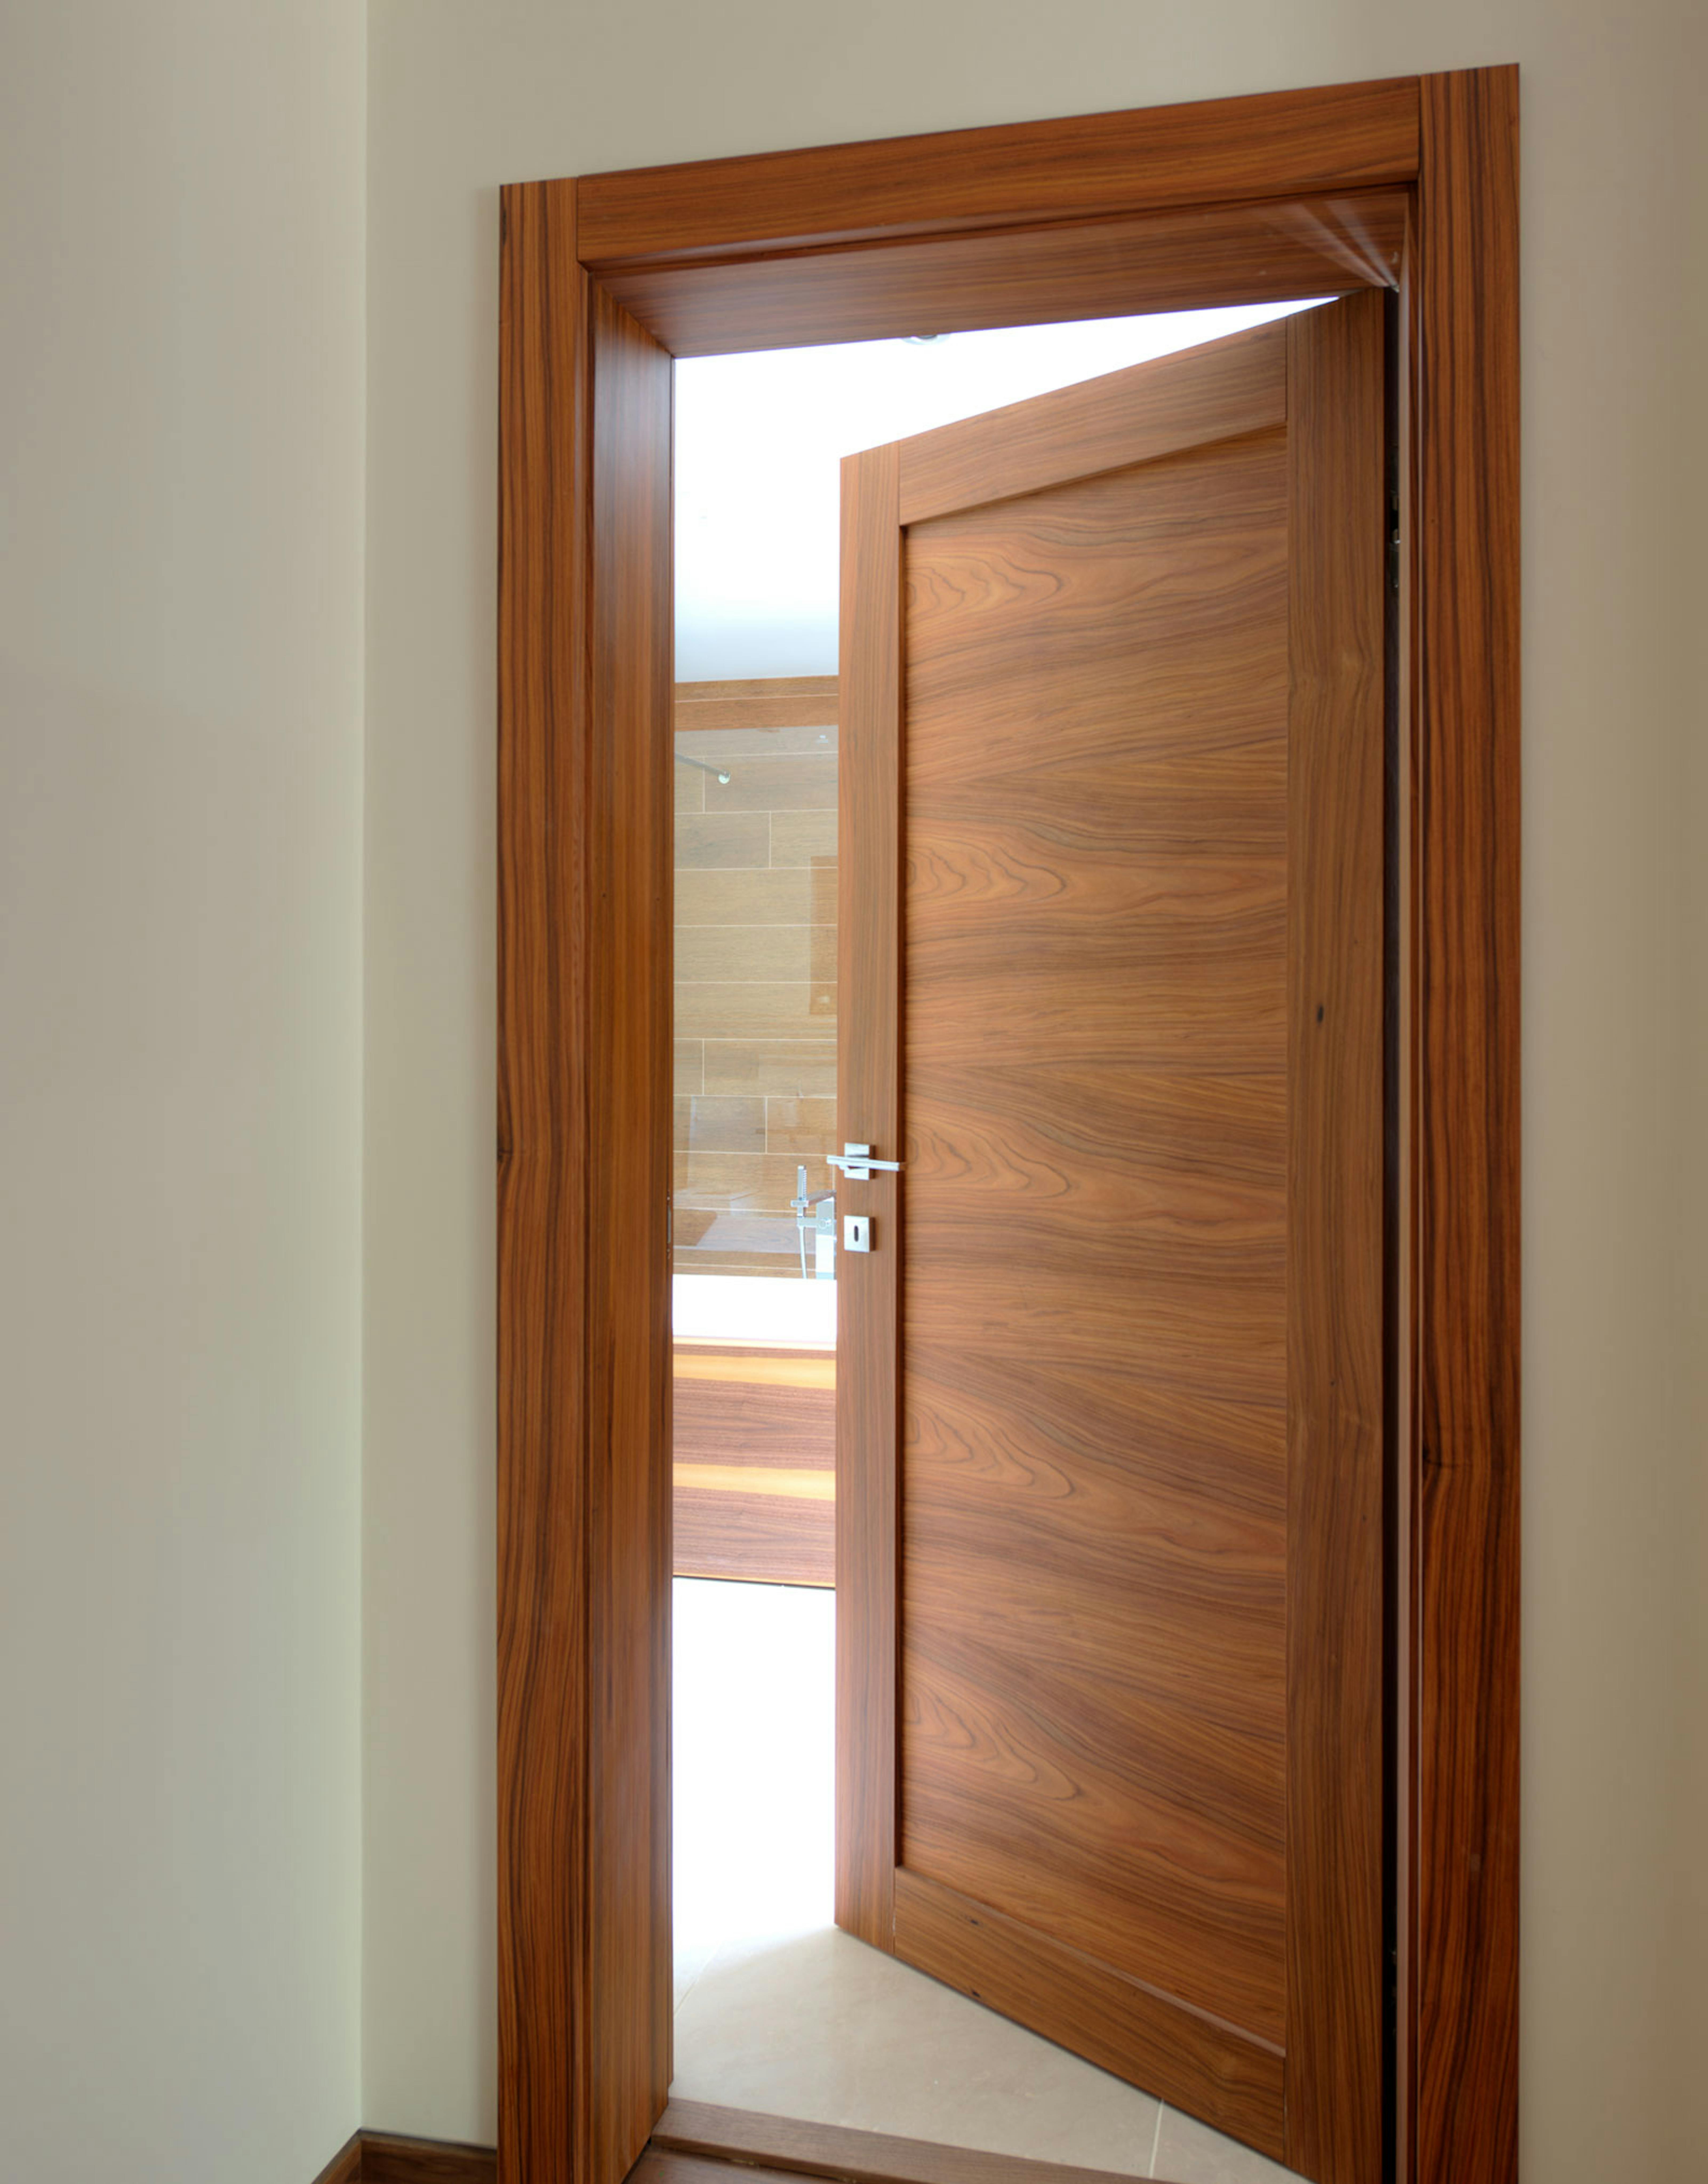 Contemporary pre-hung door set in Trem H, Rosewood finish, by Deuren. Door ajar with glimpse of bathroom.